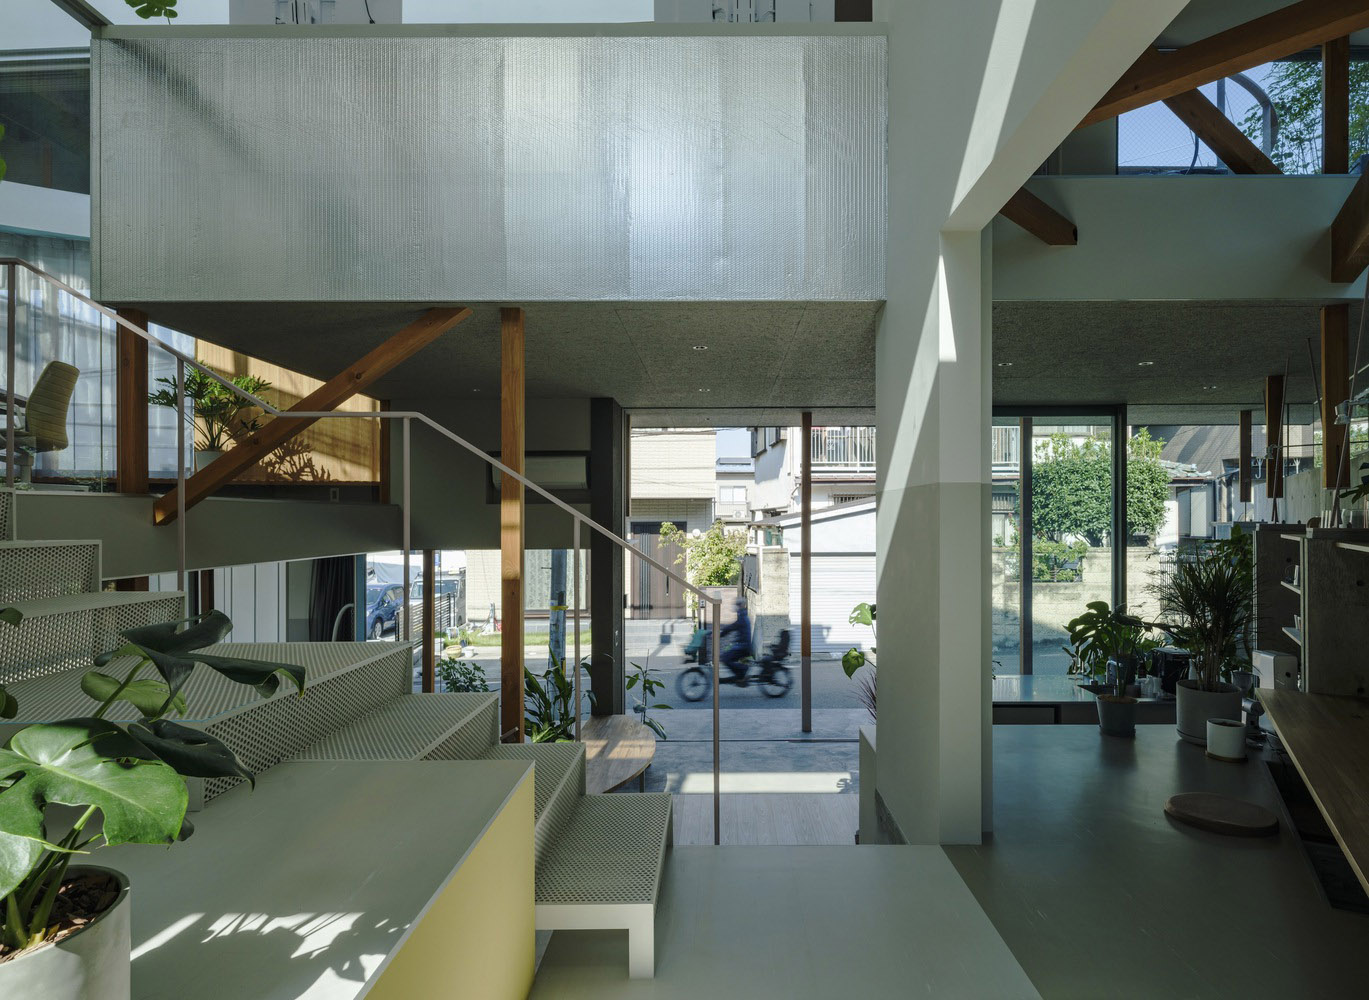 Keio Architecture Sano Lab,办公室设计案例,极简主义办公室,建筑事务所办公室,Eureka,HHO